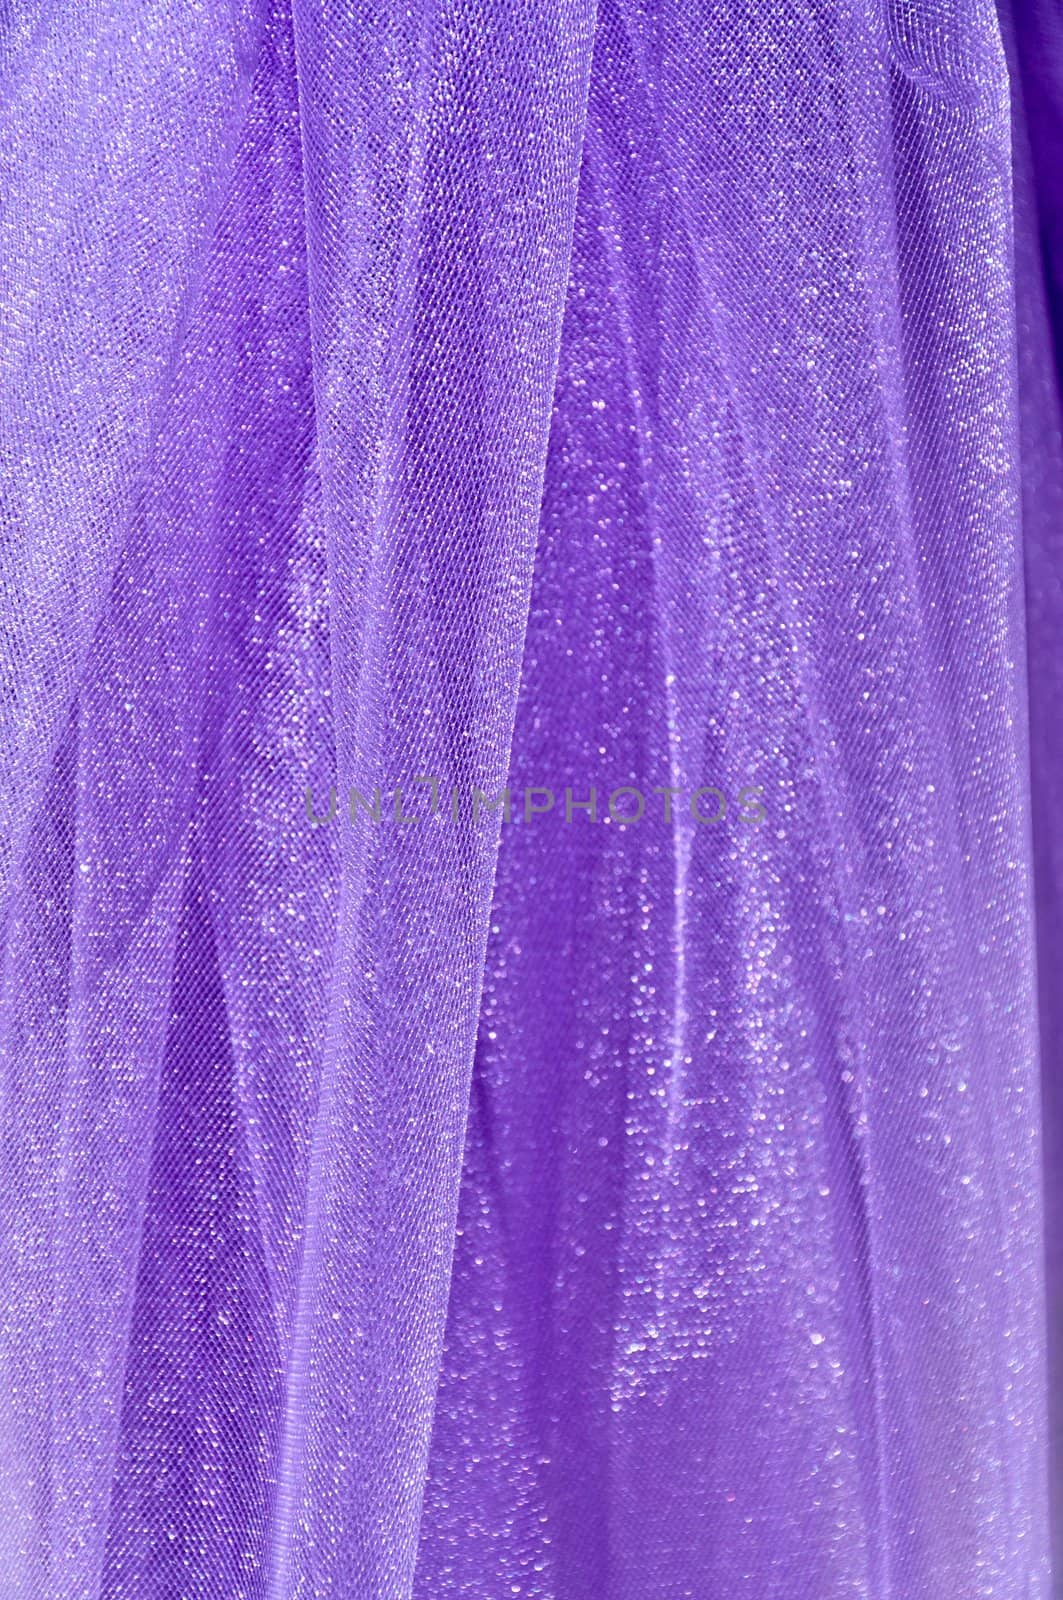 Background - Violet organza texture